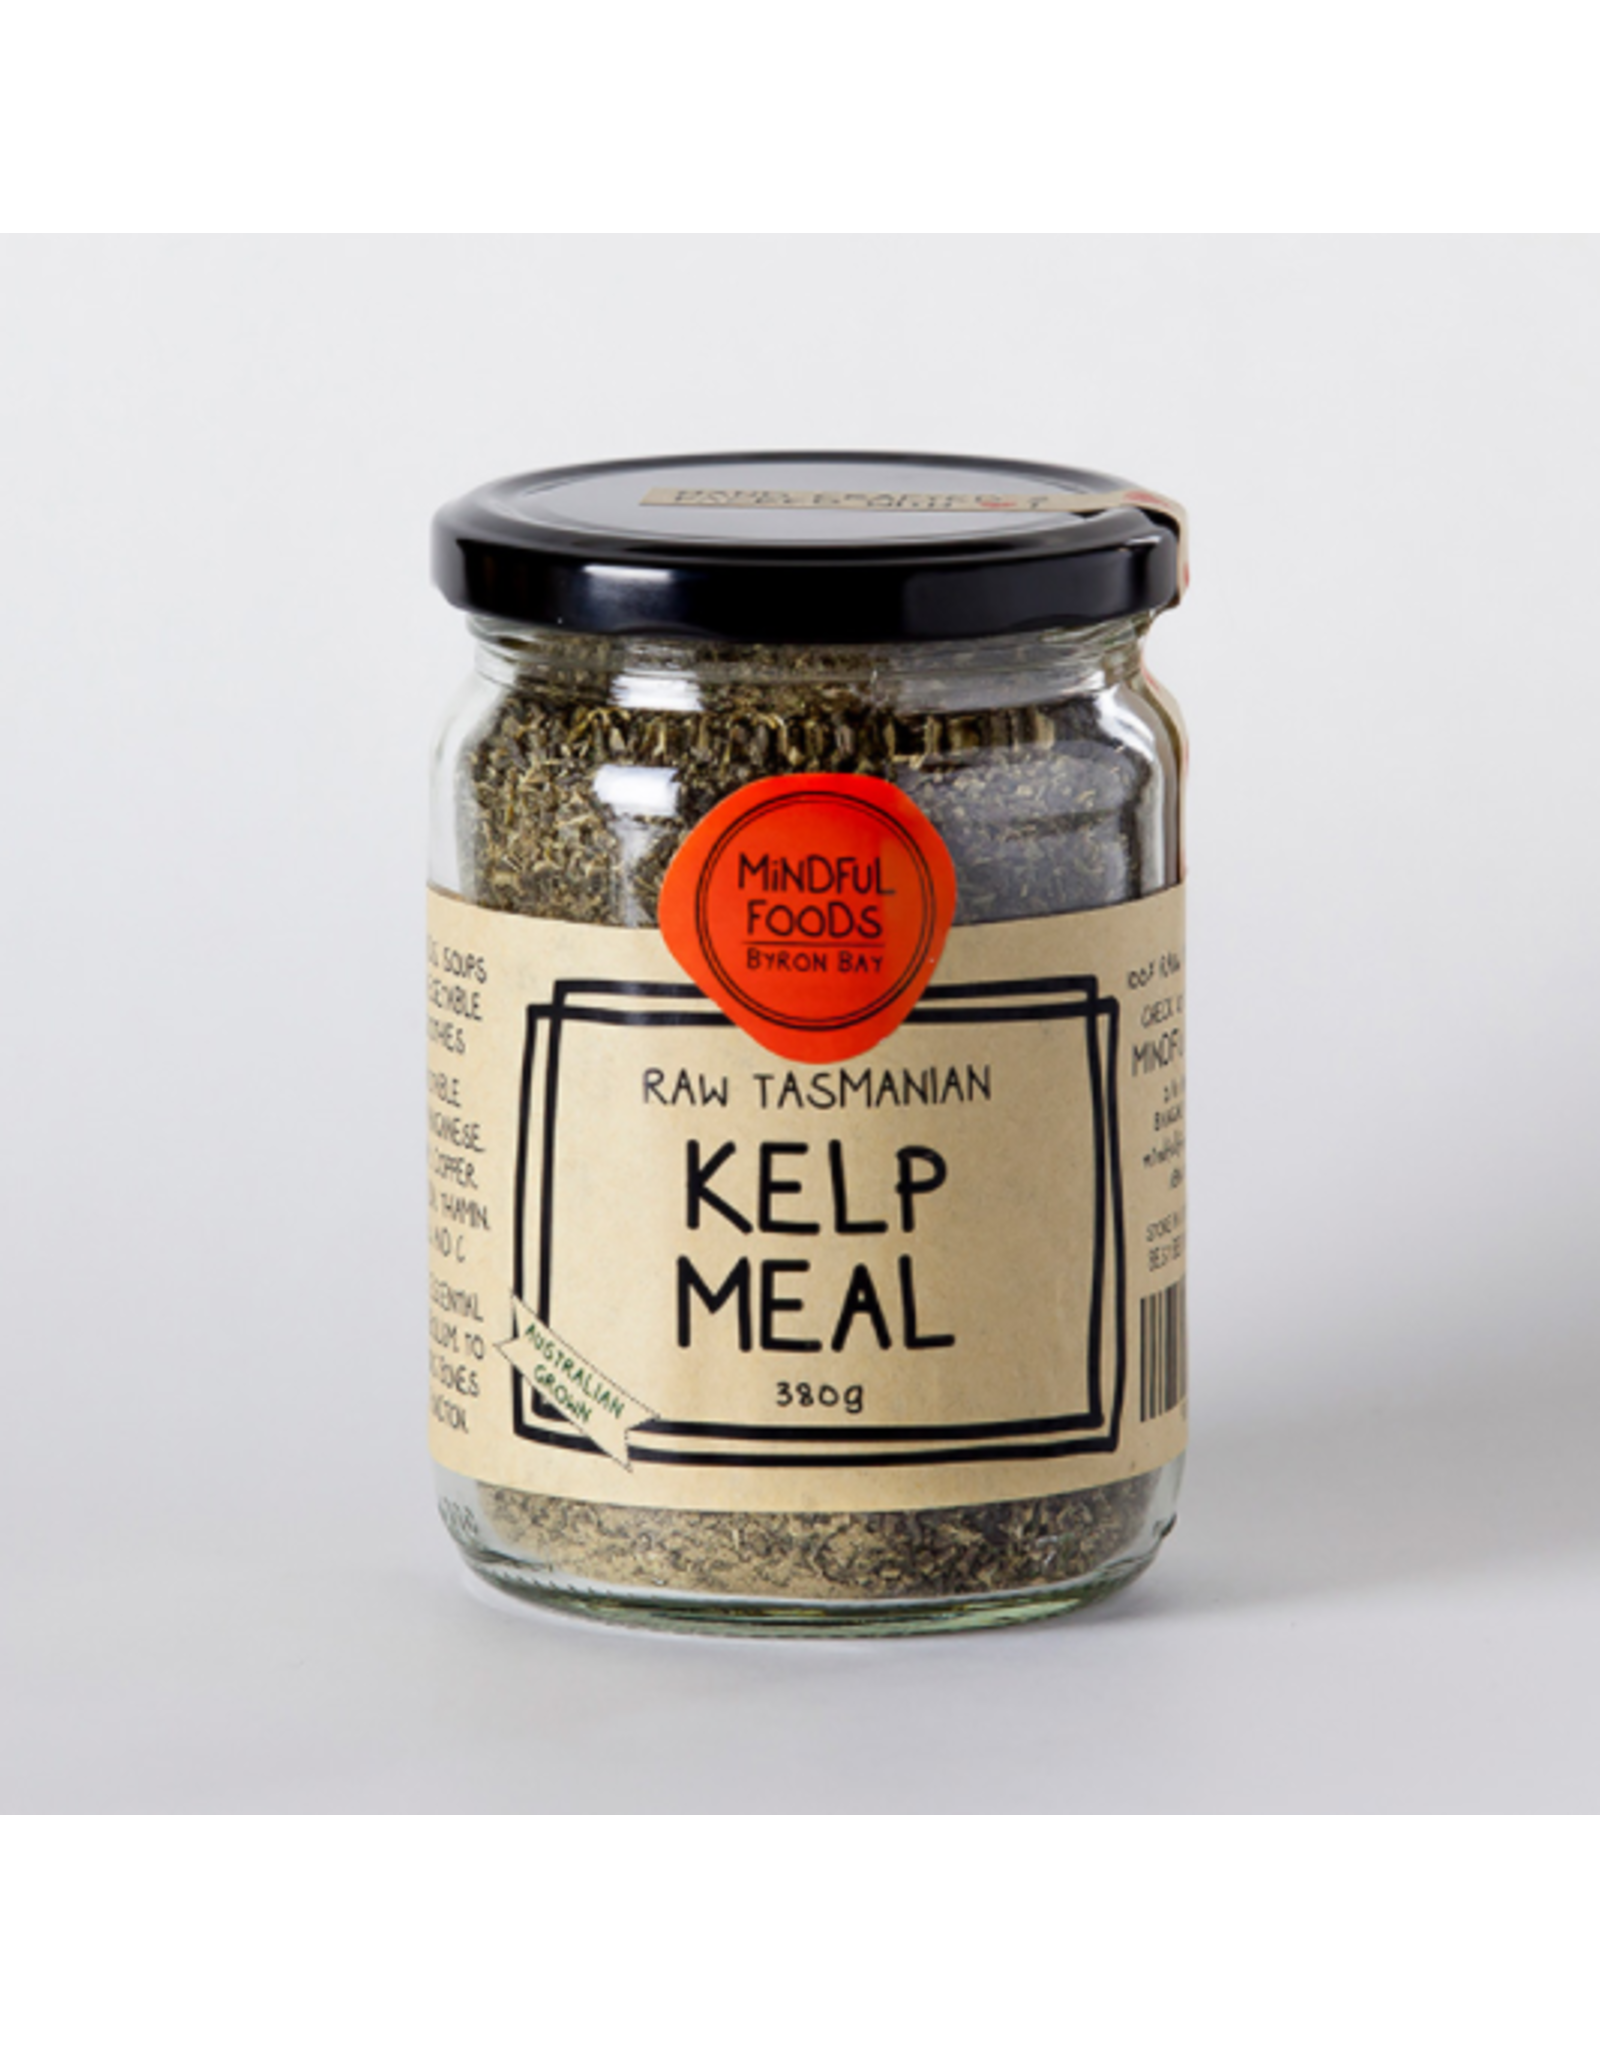 Buy Mindful Foods Online Kelp Meal Raw Tasmanian 180g jar